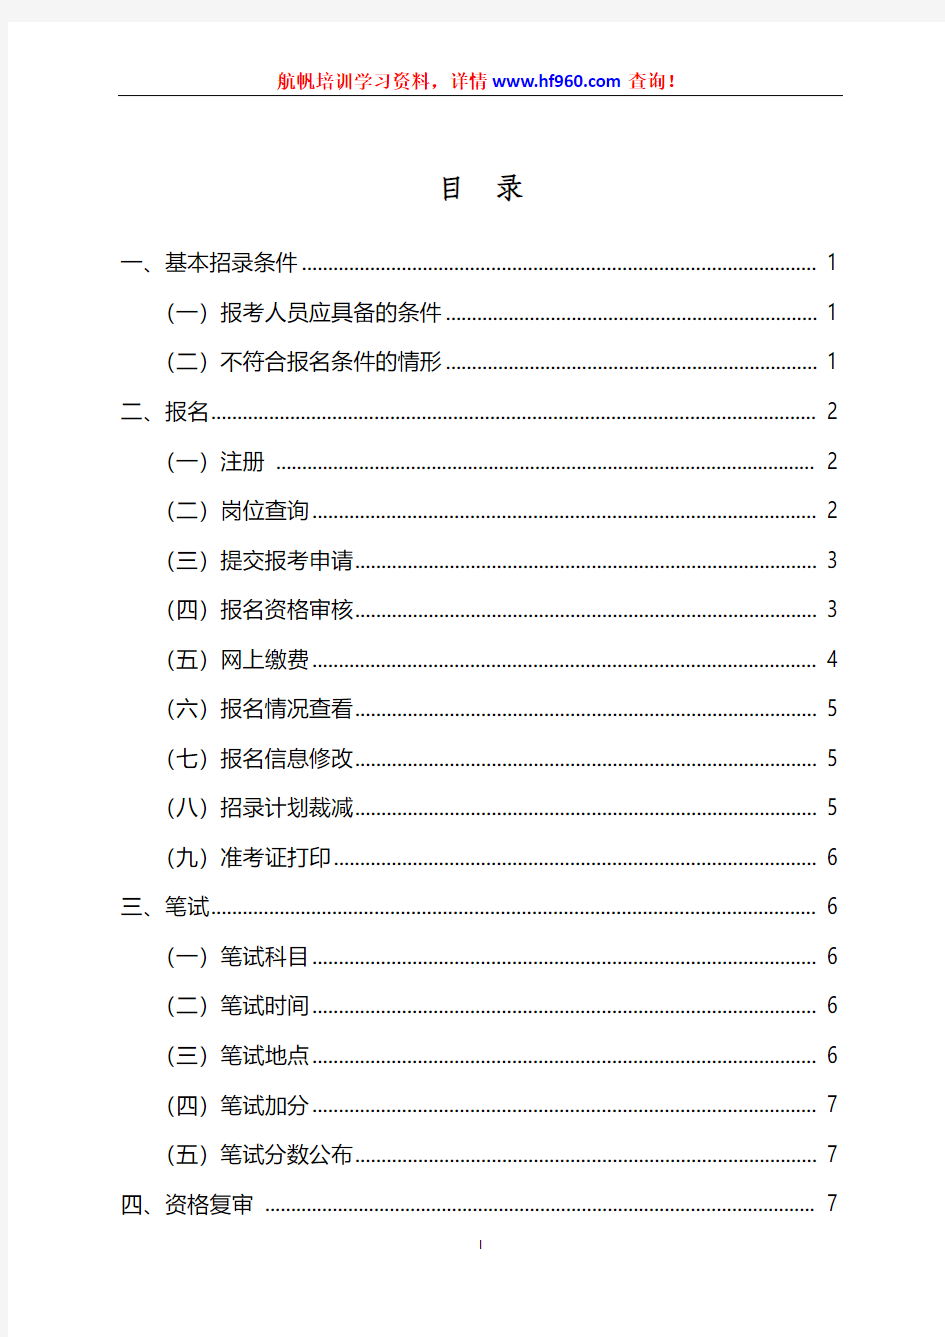 2014年云南省公务员考试录用公告